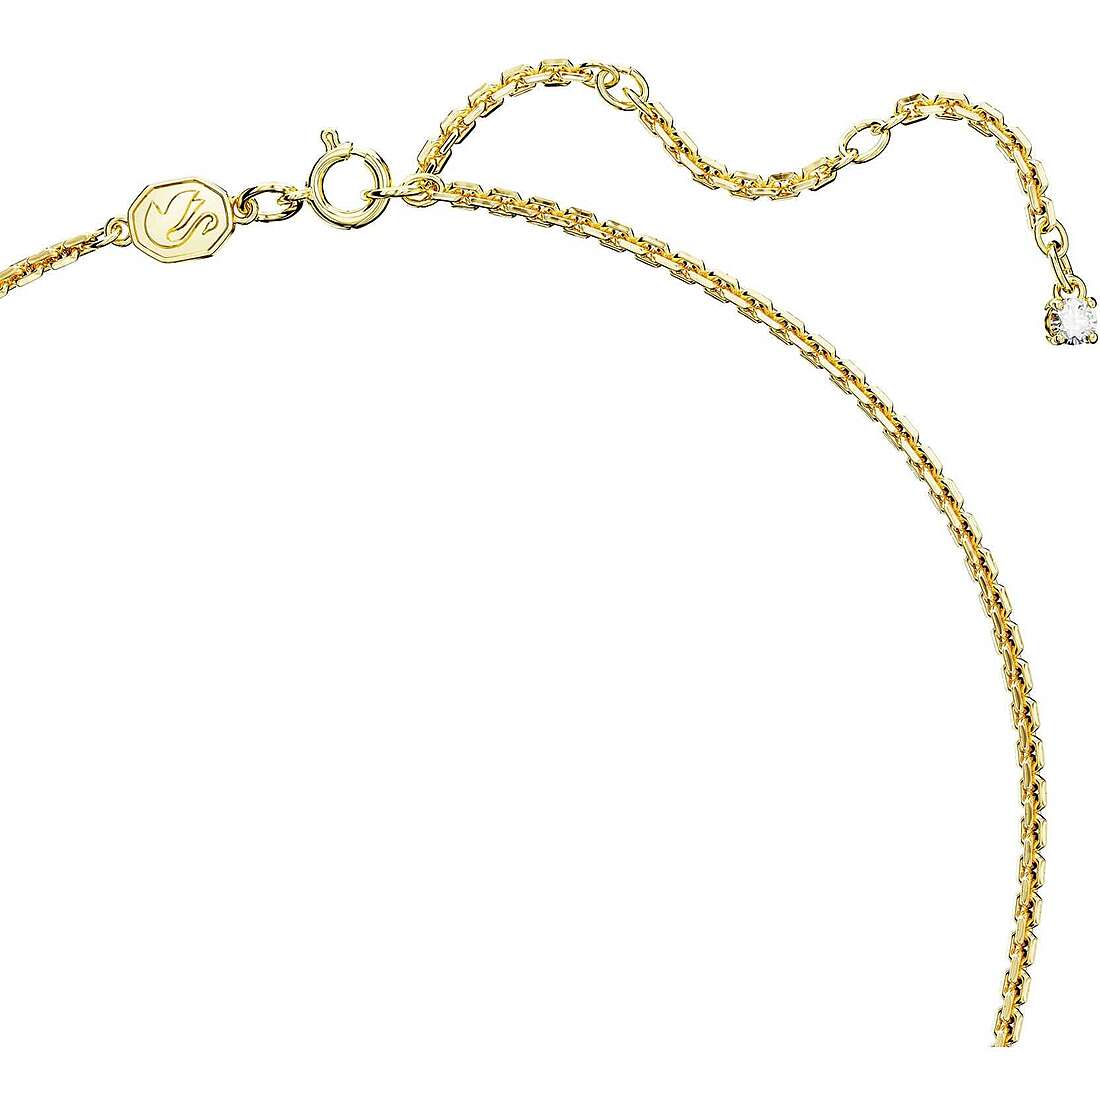 necklace woman jewellery Swarovski Mother's Day 5649933